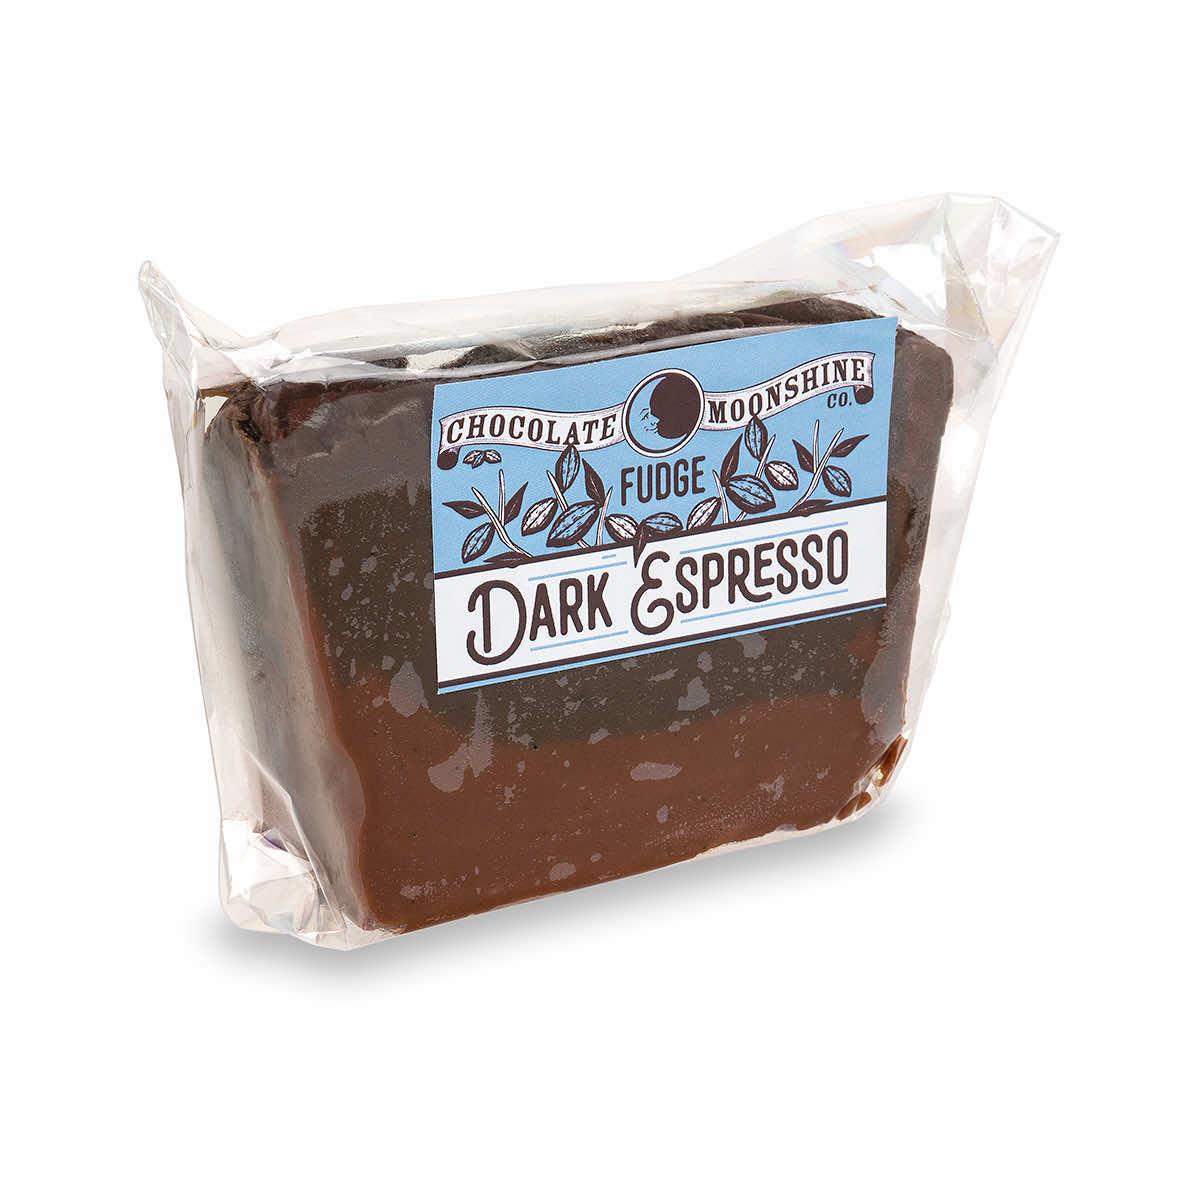  Dark Espresso Fudge